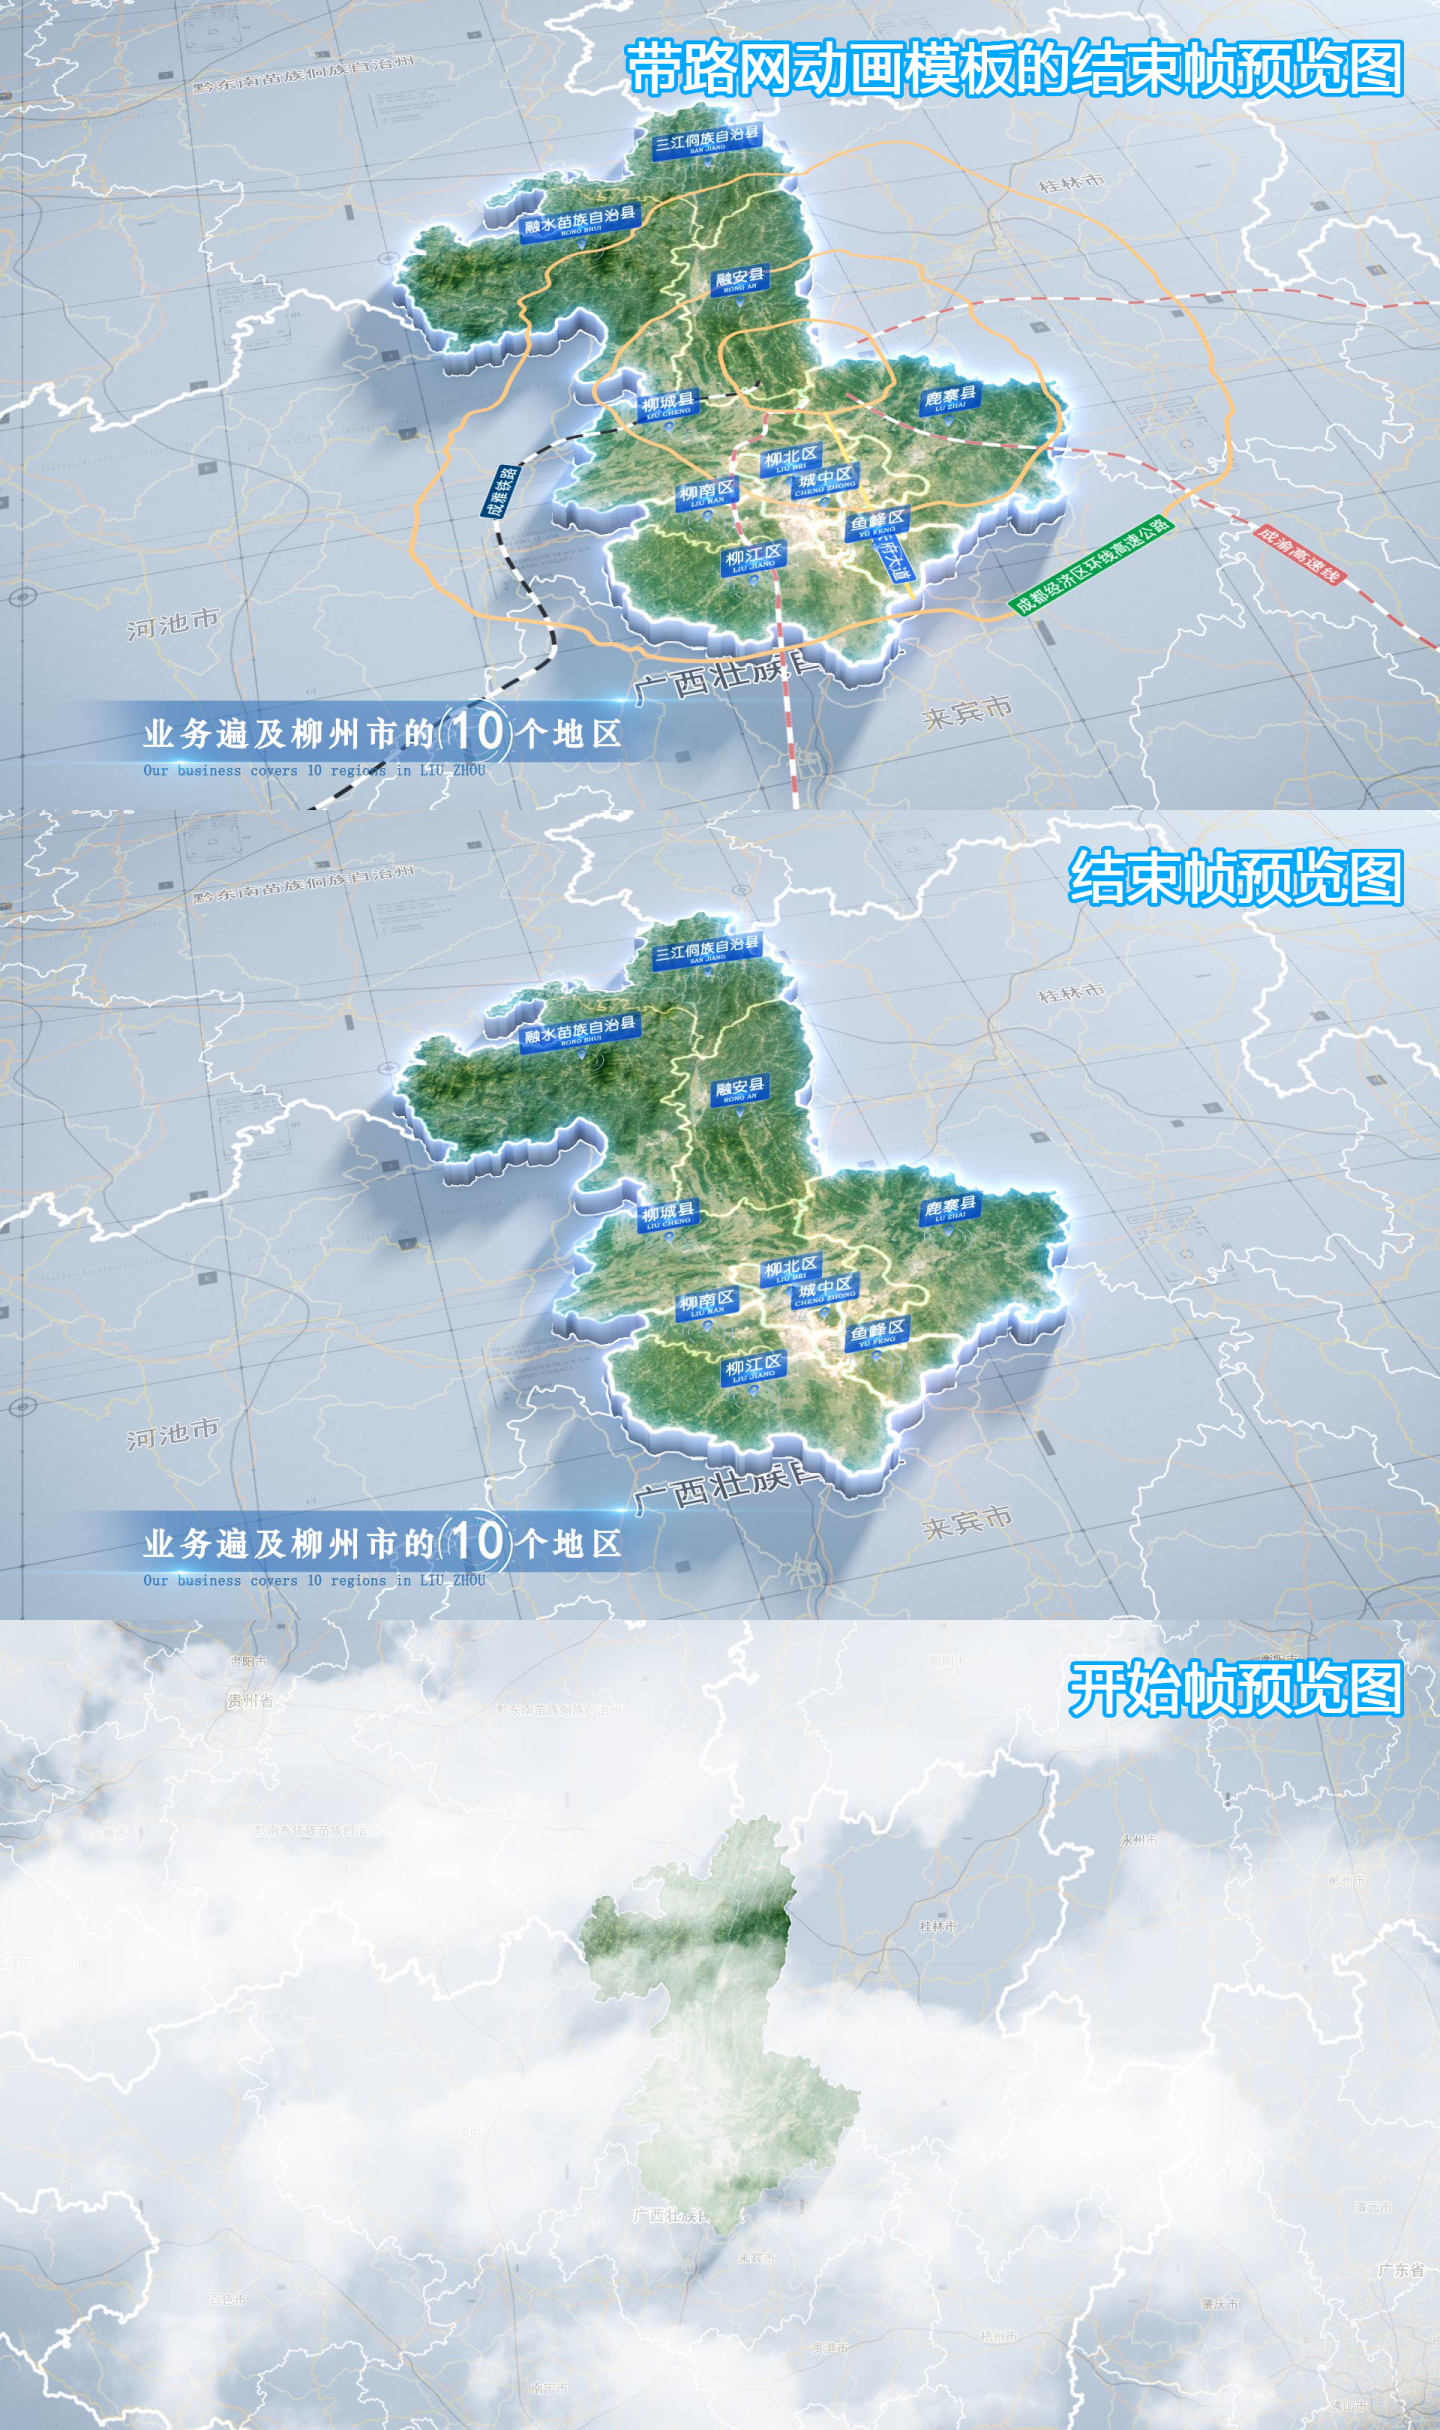 柳州市地图云中俯冲干净简约亮色三维区位